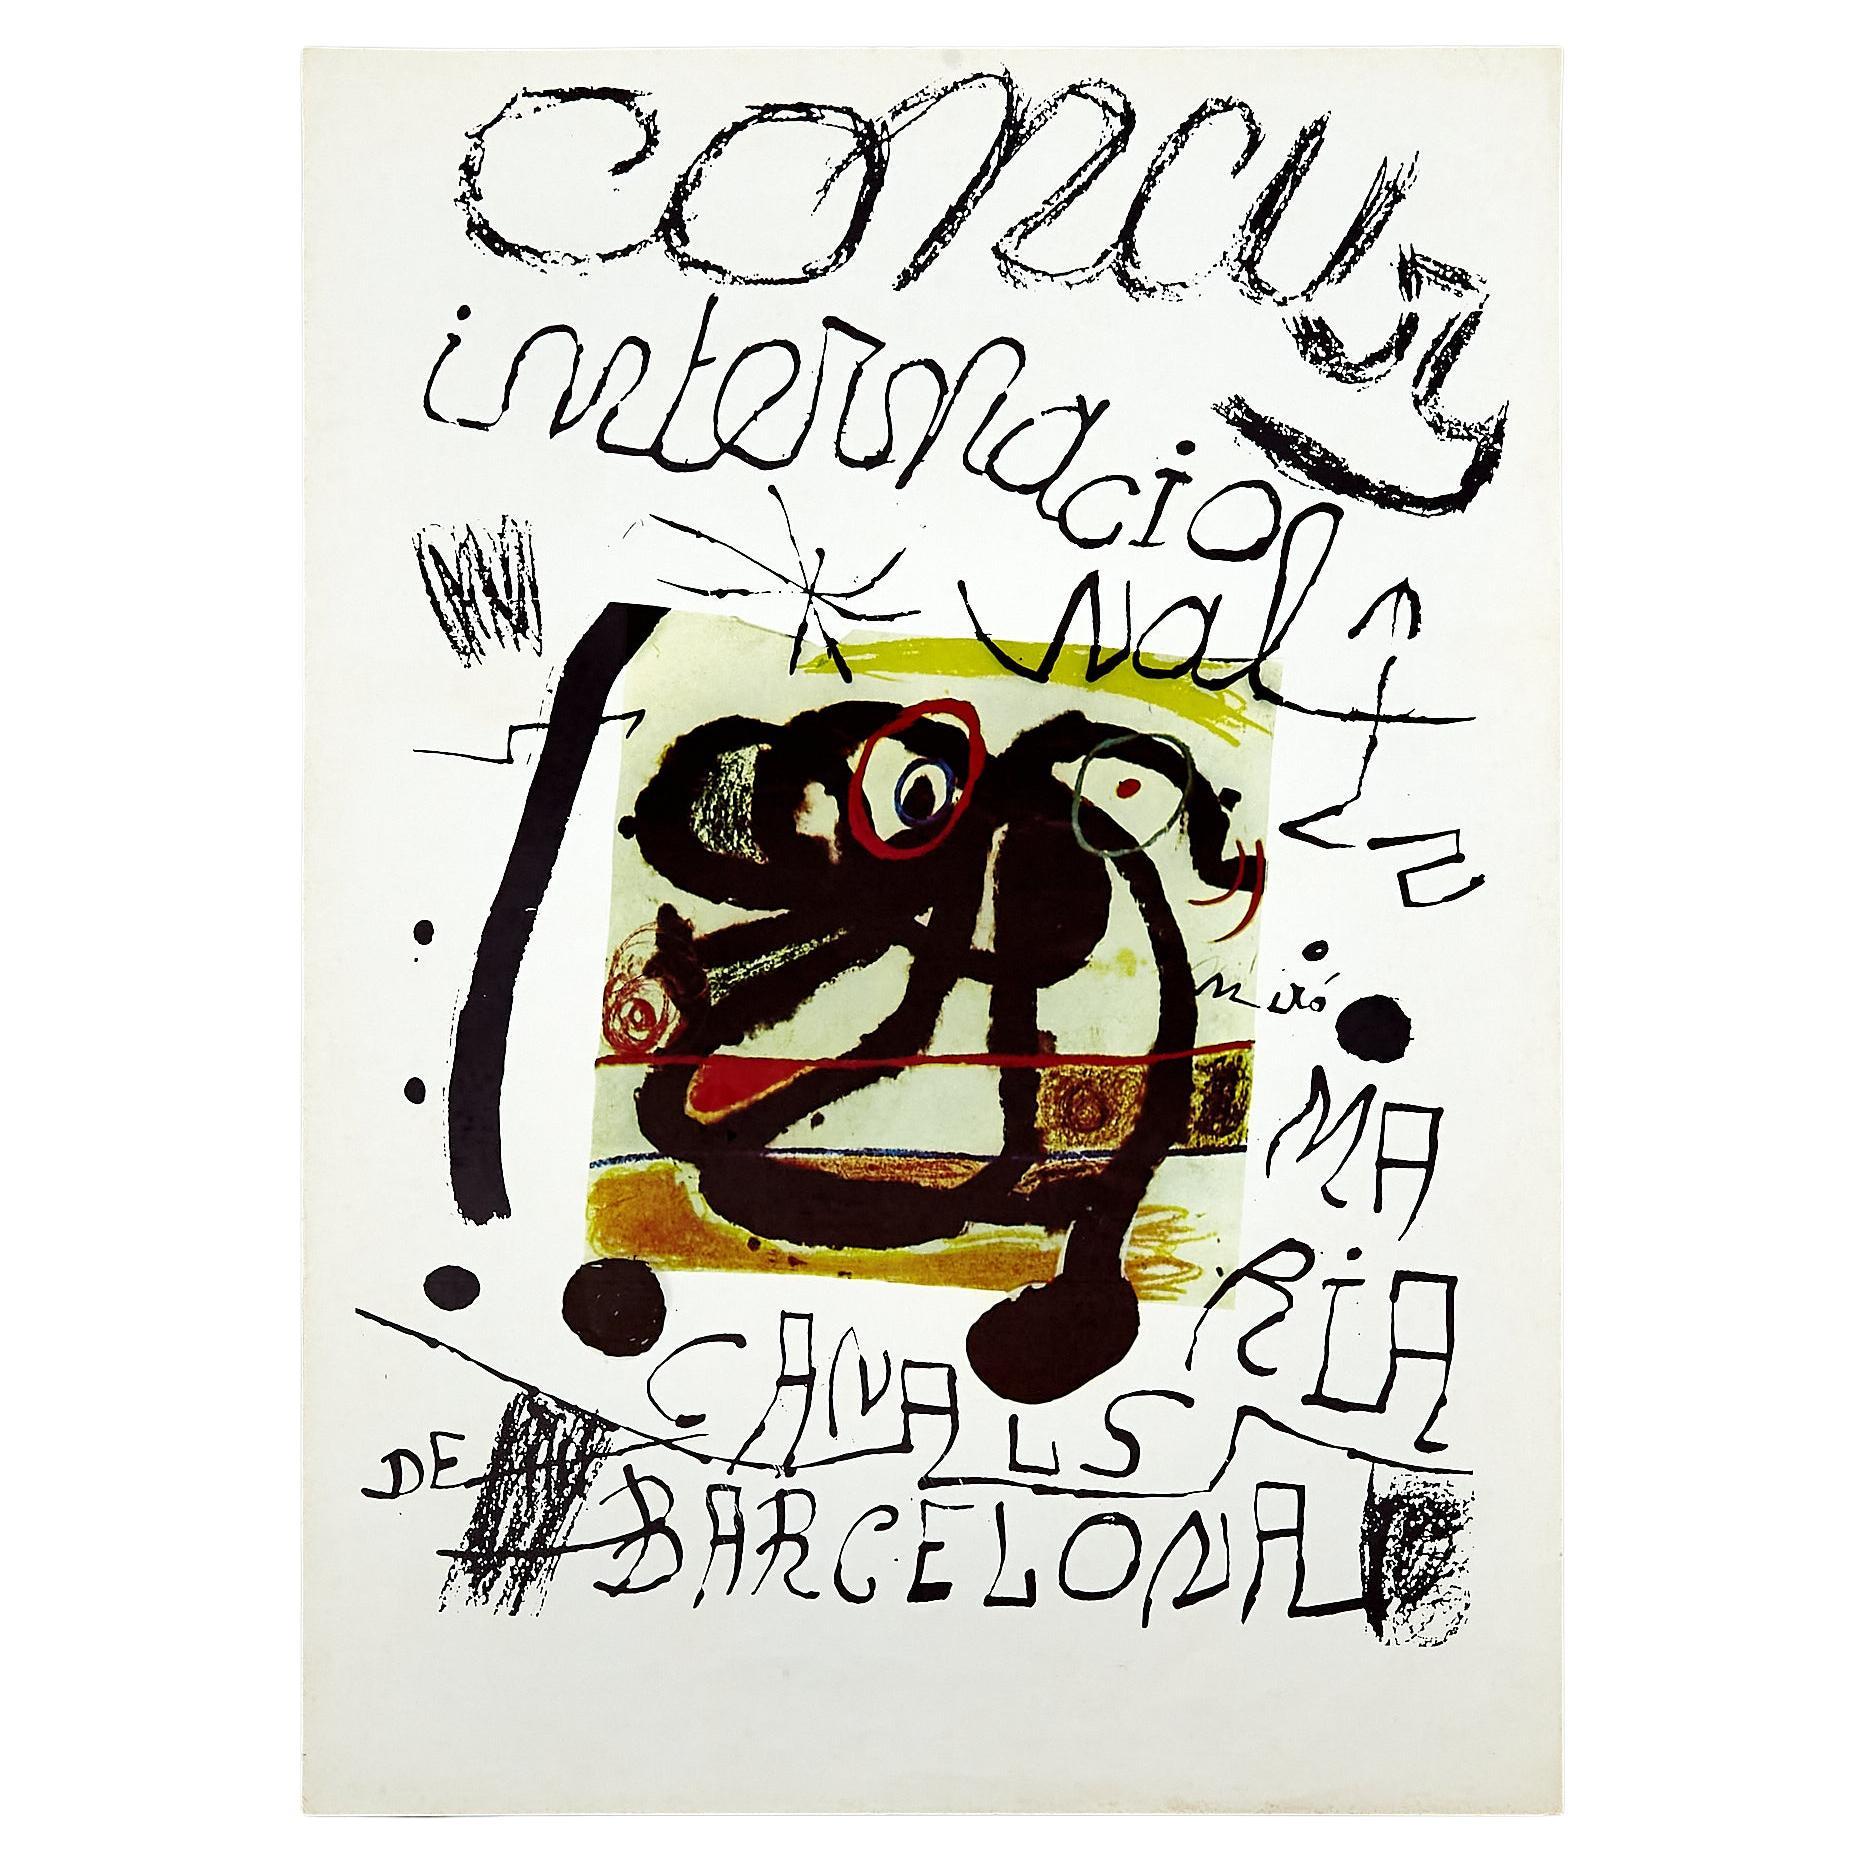 Plakat des Concurs Internacional Maria Canals von Joan Miró, ca. 1979.